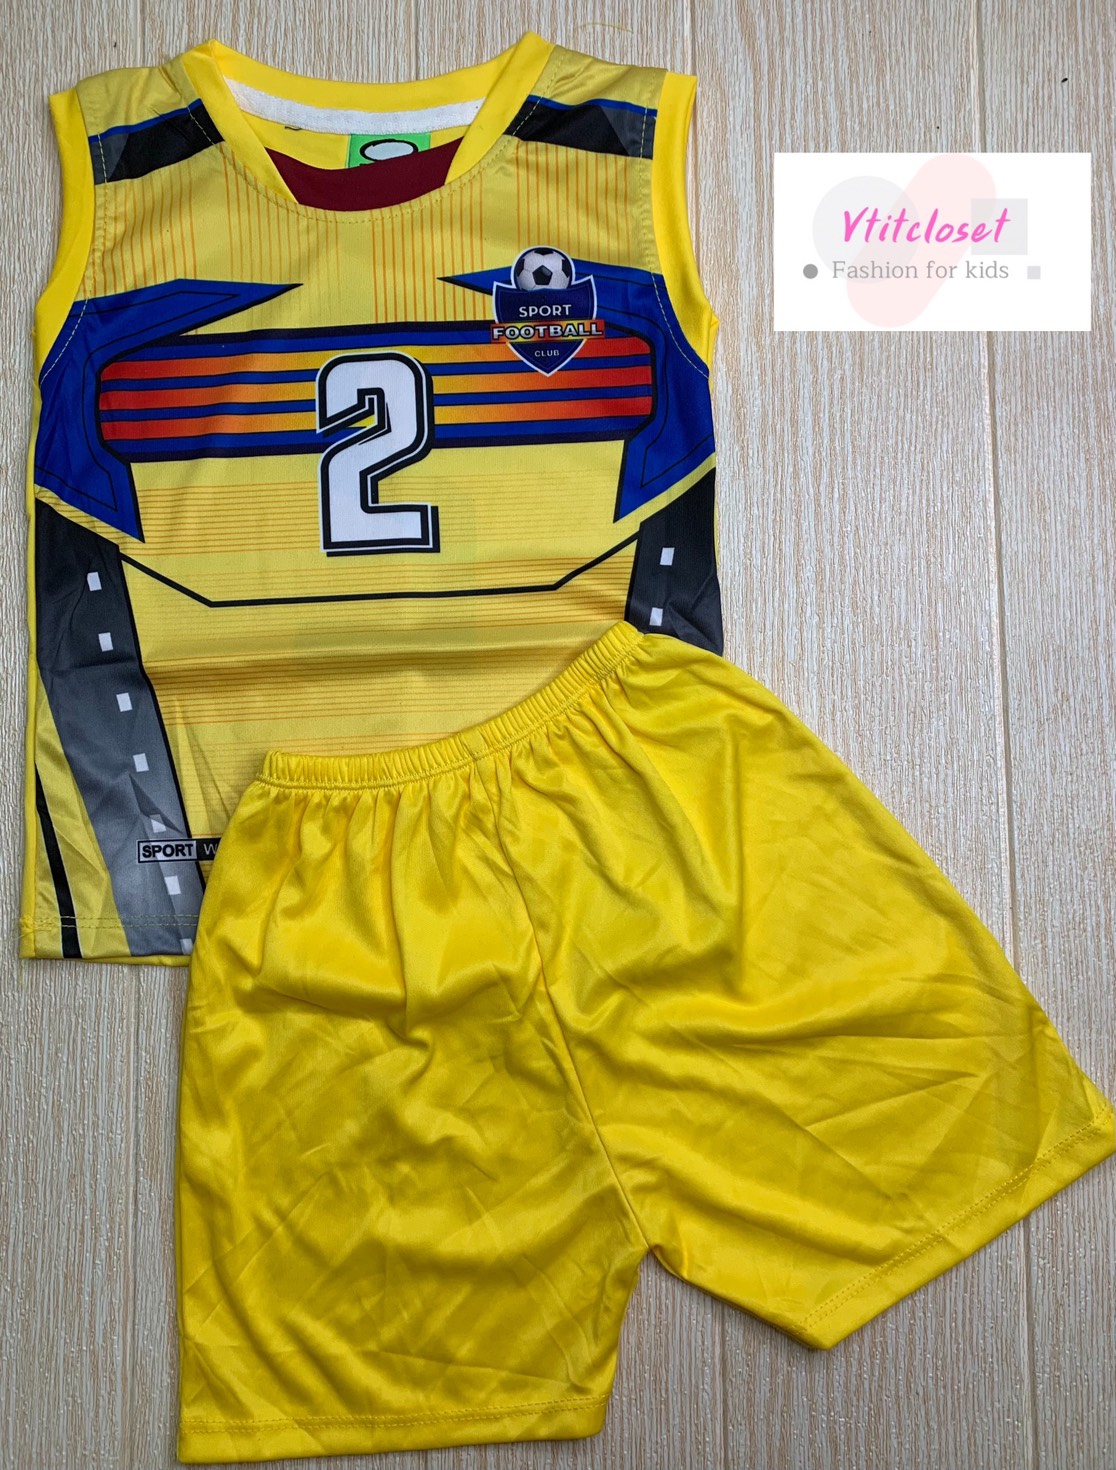 Vtitcloset ชุดบอลเด็ก(กล้าม) ชุดกีฬากล้ามผ้ามัน เด็ก 6 เดือน-5 ขวบ ใส่สบายๆ เลือกสีได้(คละแบบ) แบบเข้าใหม่ตลอดนะ (ควรดูรอบ อก เสื้อ เป็นเกณฑ์)